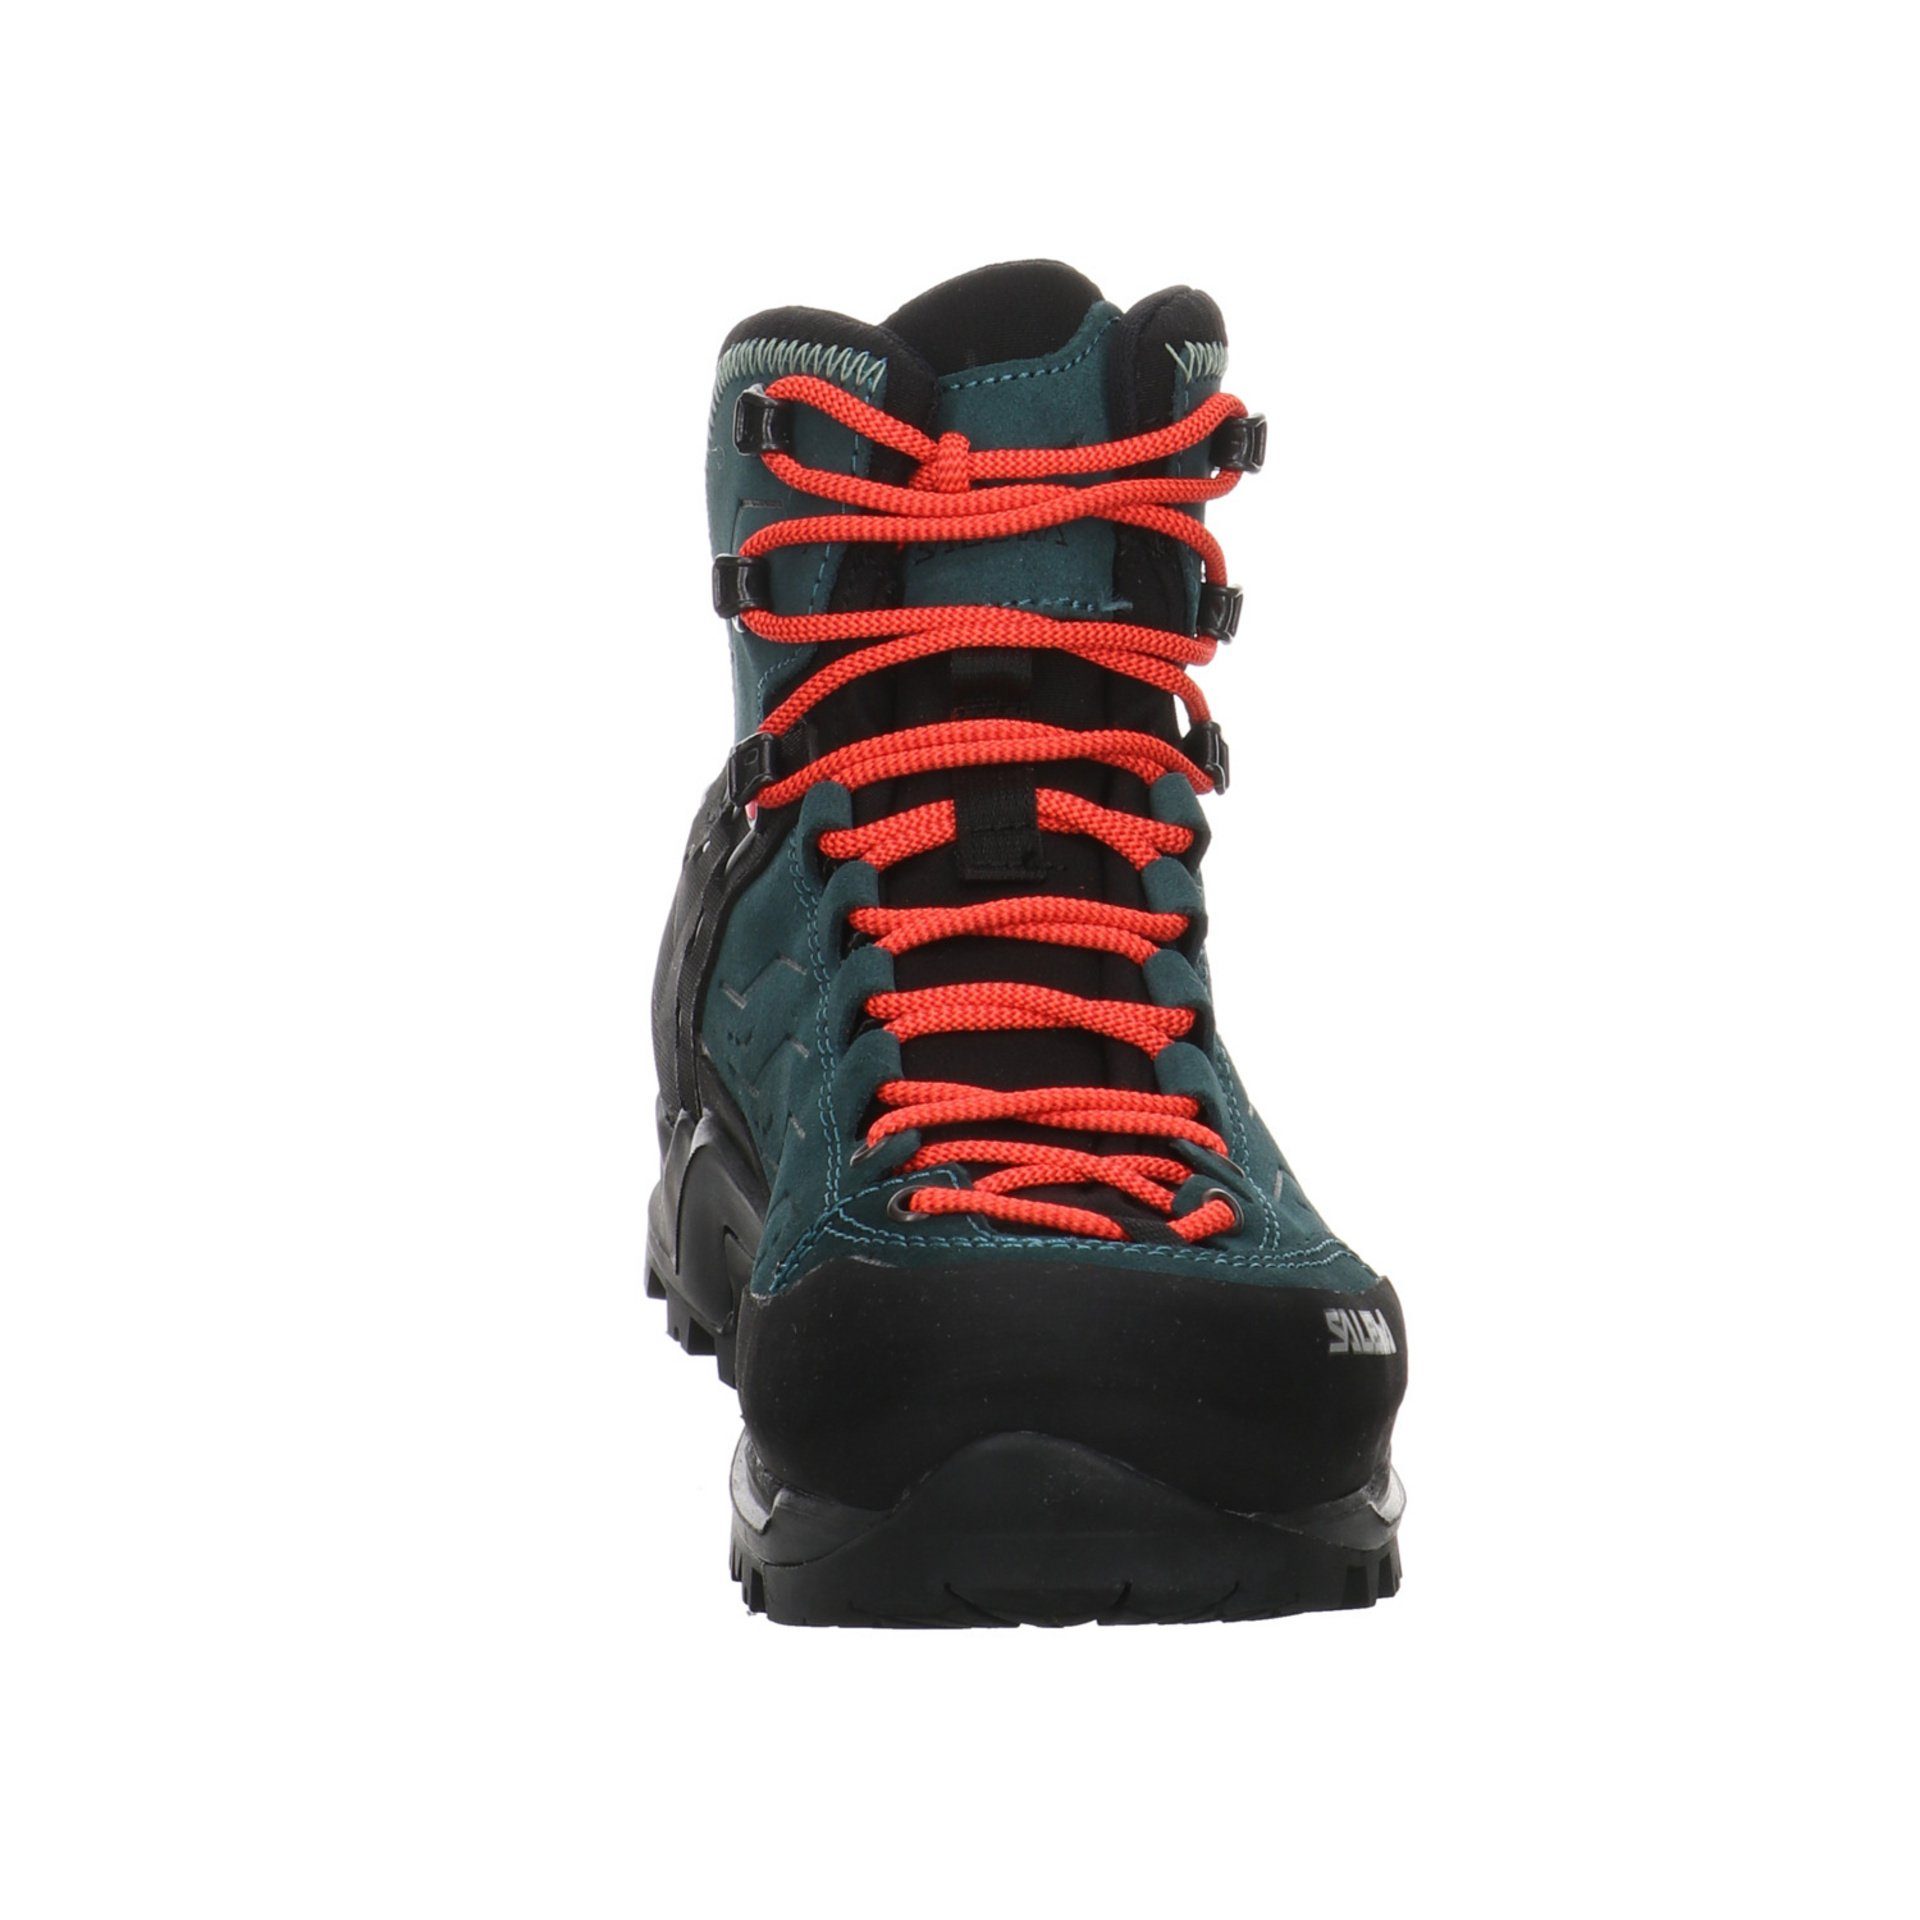 GTX Damen dunkelblau (295) Mid Schuhe Trainer Leder-/Textilkombination Salewa Outdoorschuh Outdoor Mountain